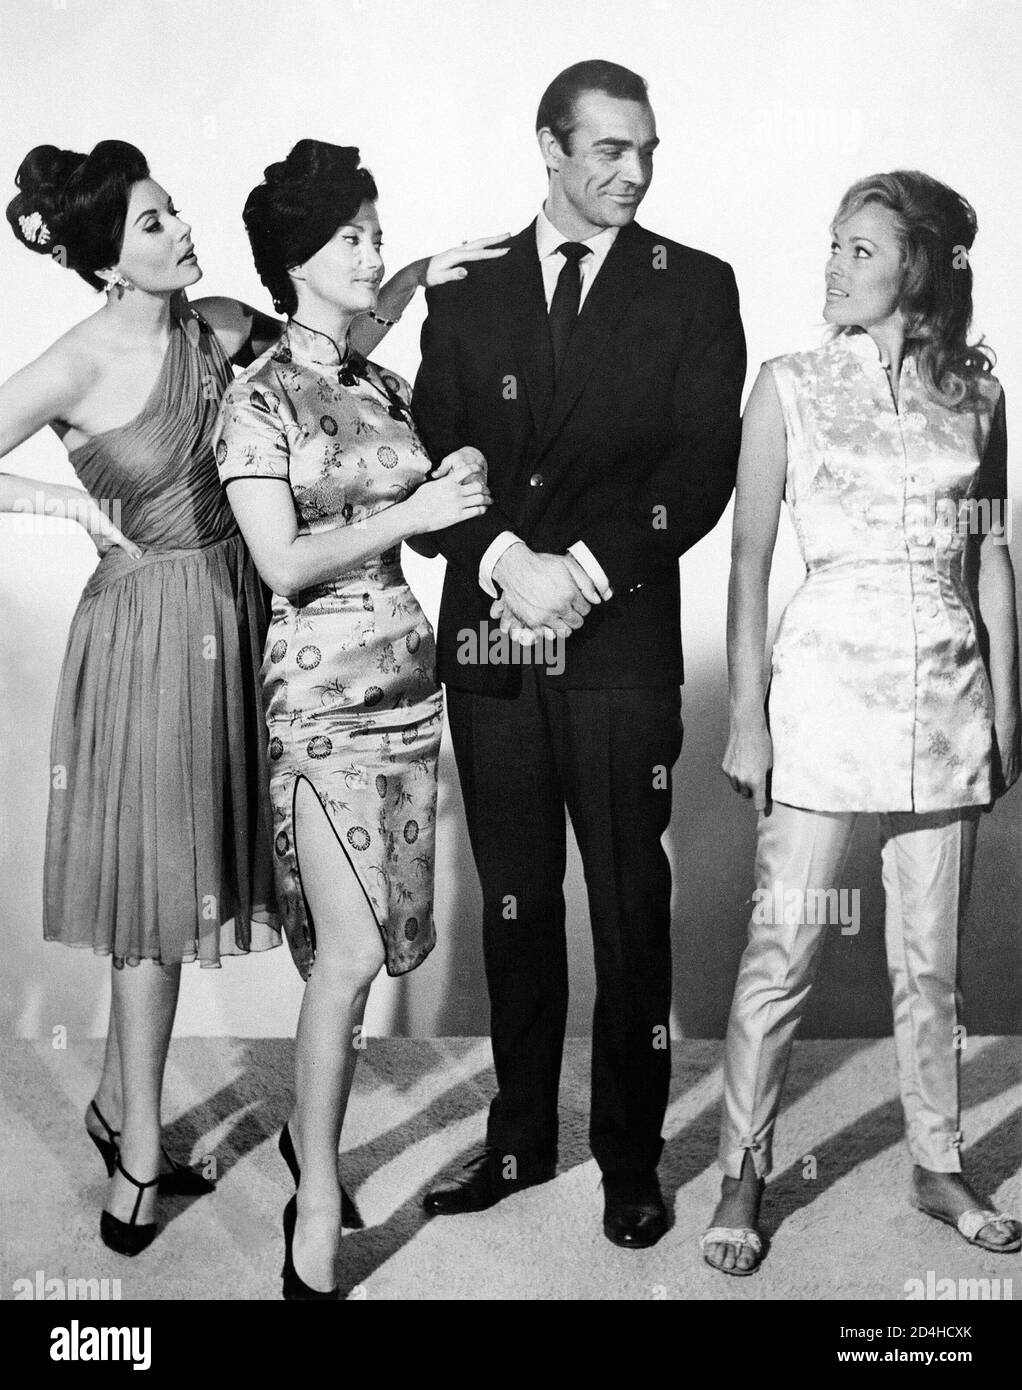 Sean Connery posiert mit den Bond Girls von Dr. No' - Eunice Gayson, Zena Marshal, and Ursula Andress (1962) United Künstler / Aktenzeichen # 34000-535THA Stockfoto